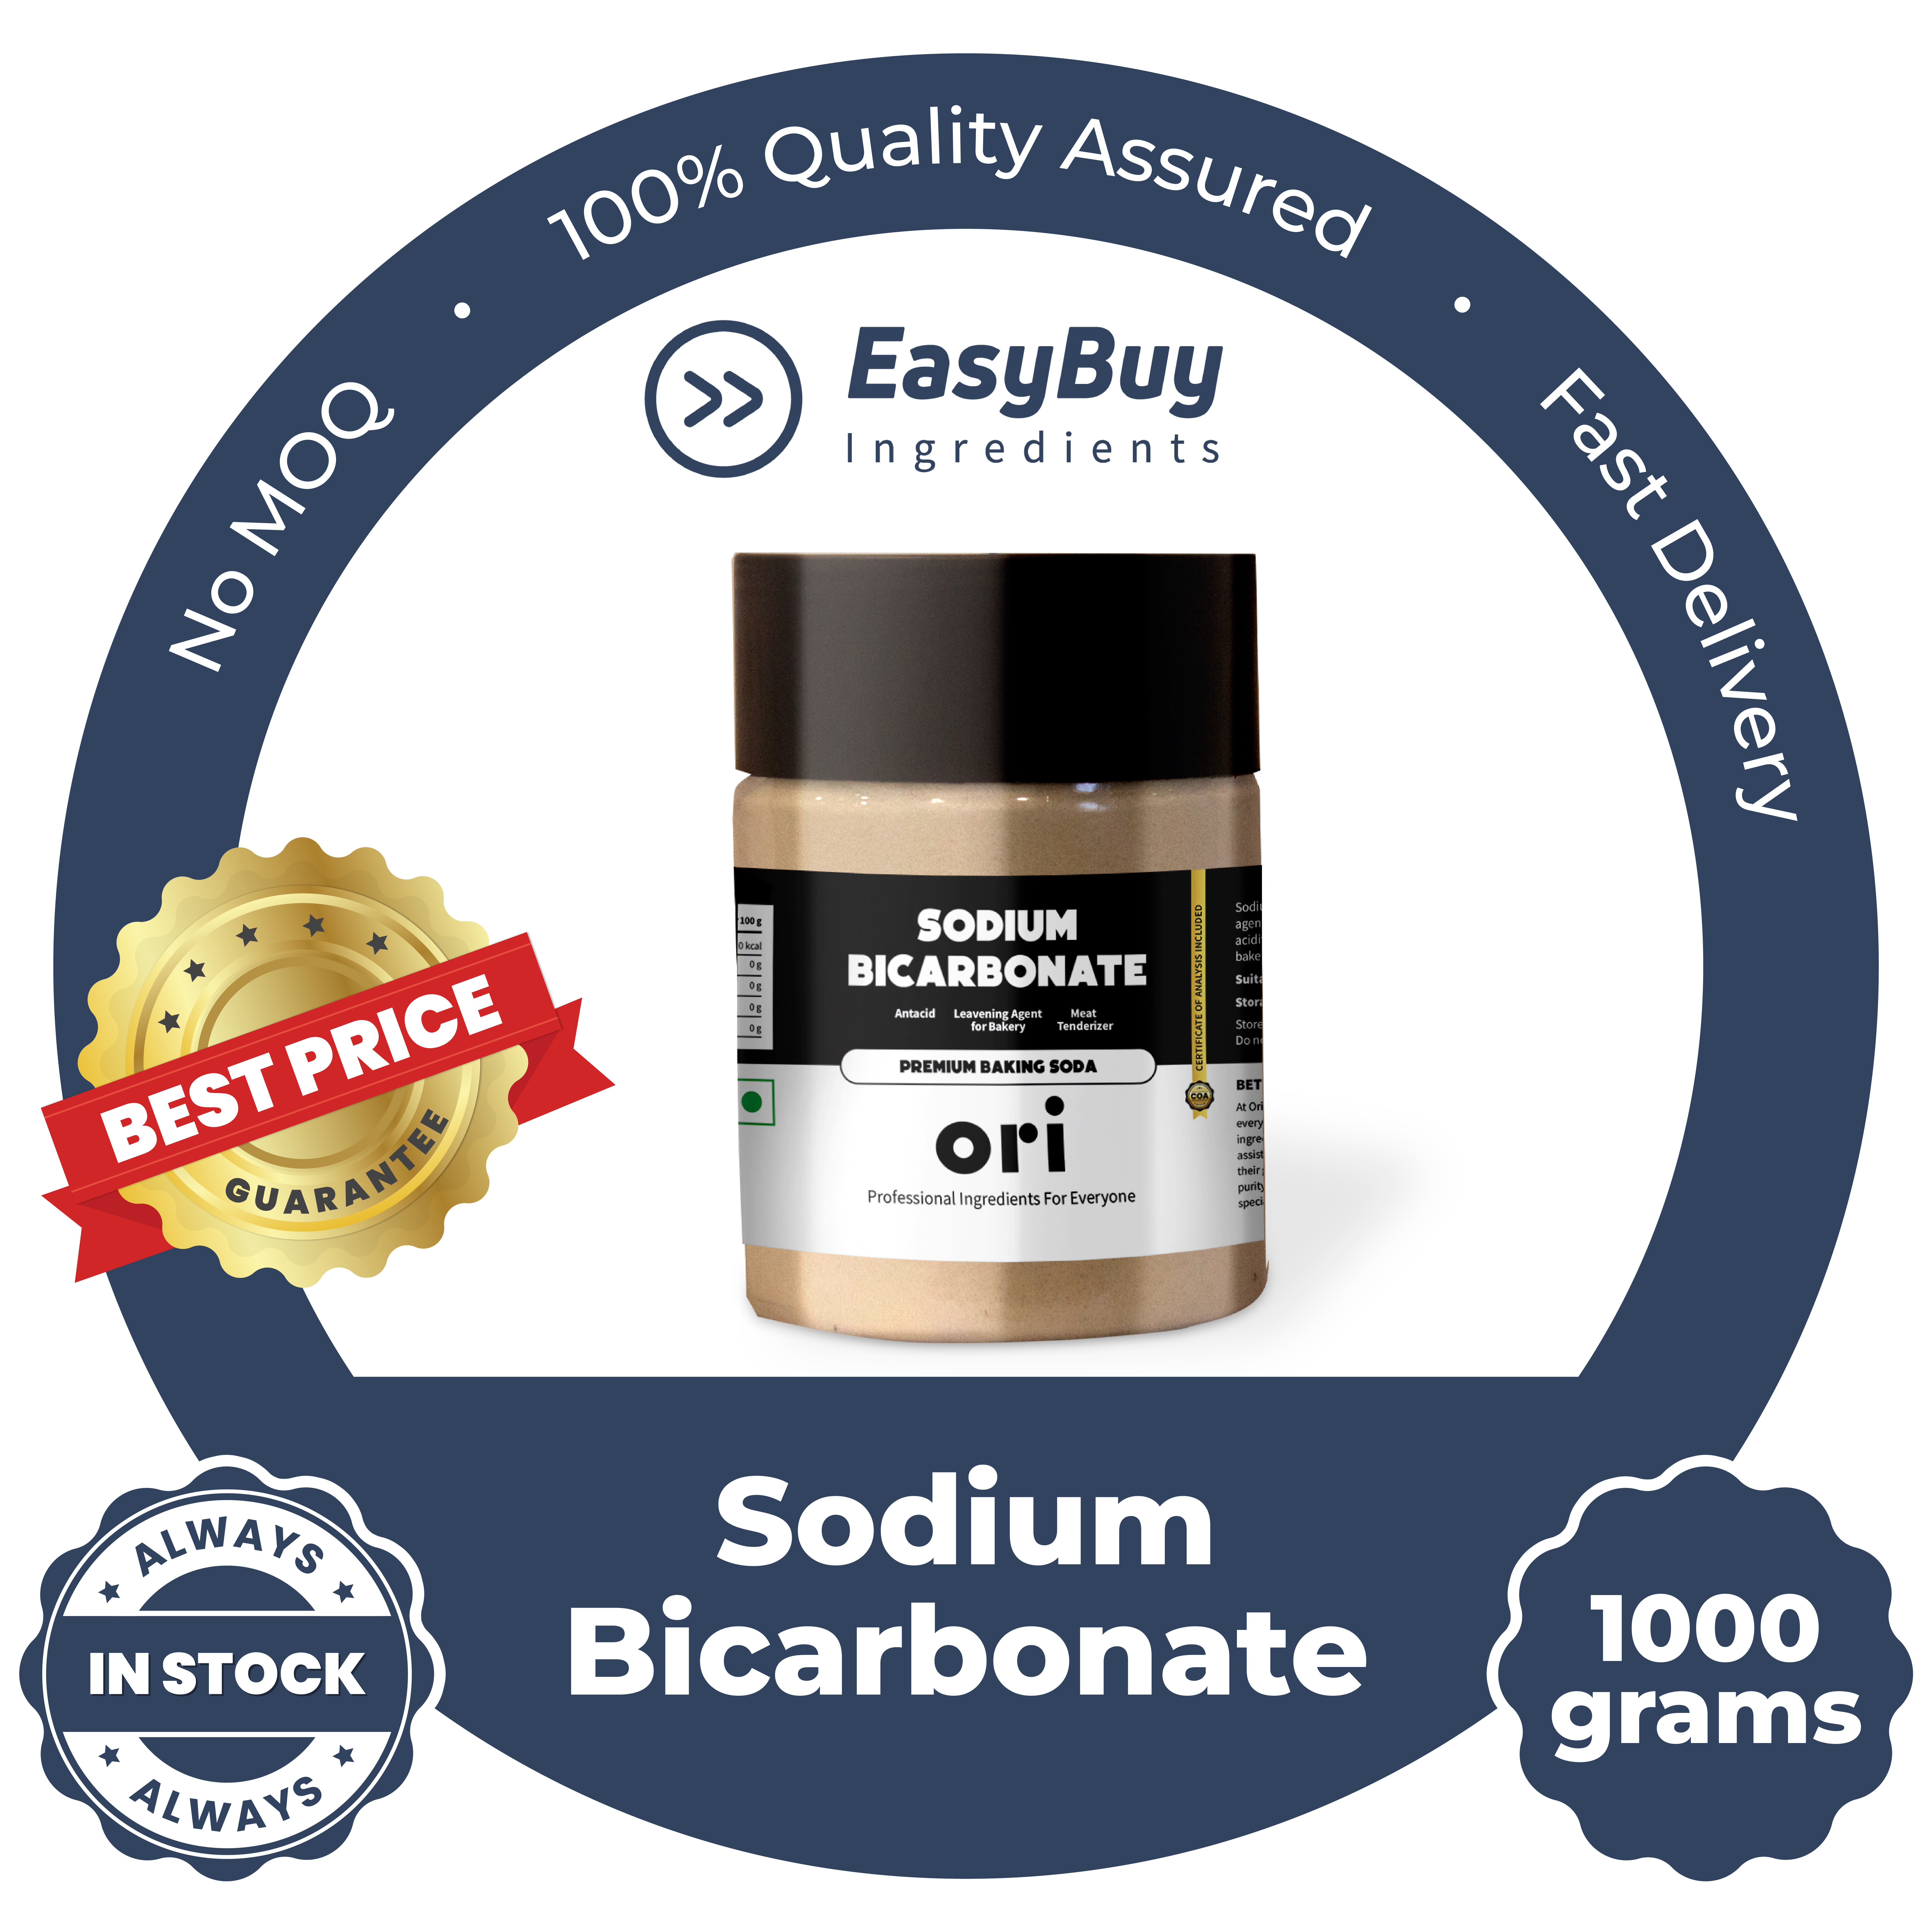 Sodium Bicarbonate - Premium Baking Soda